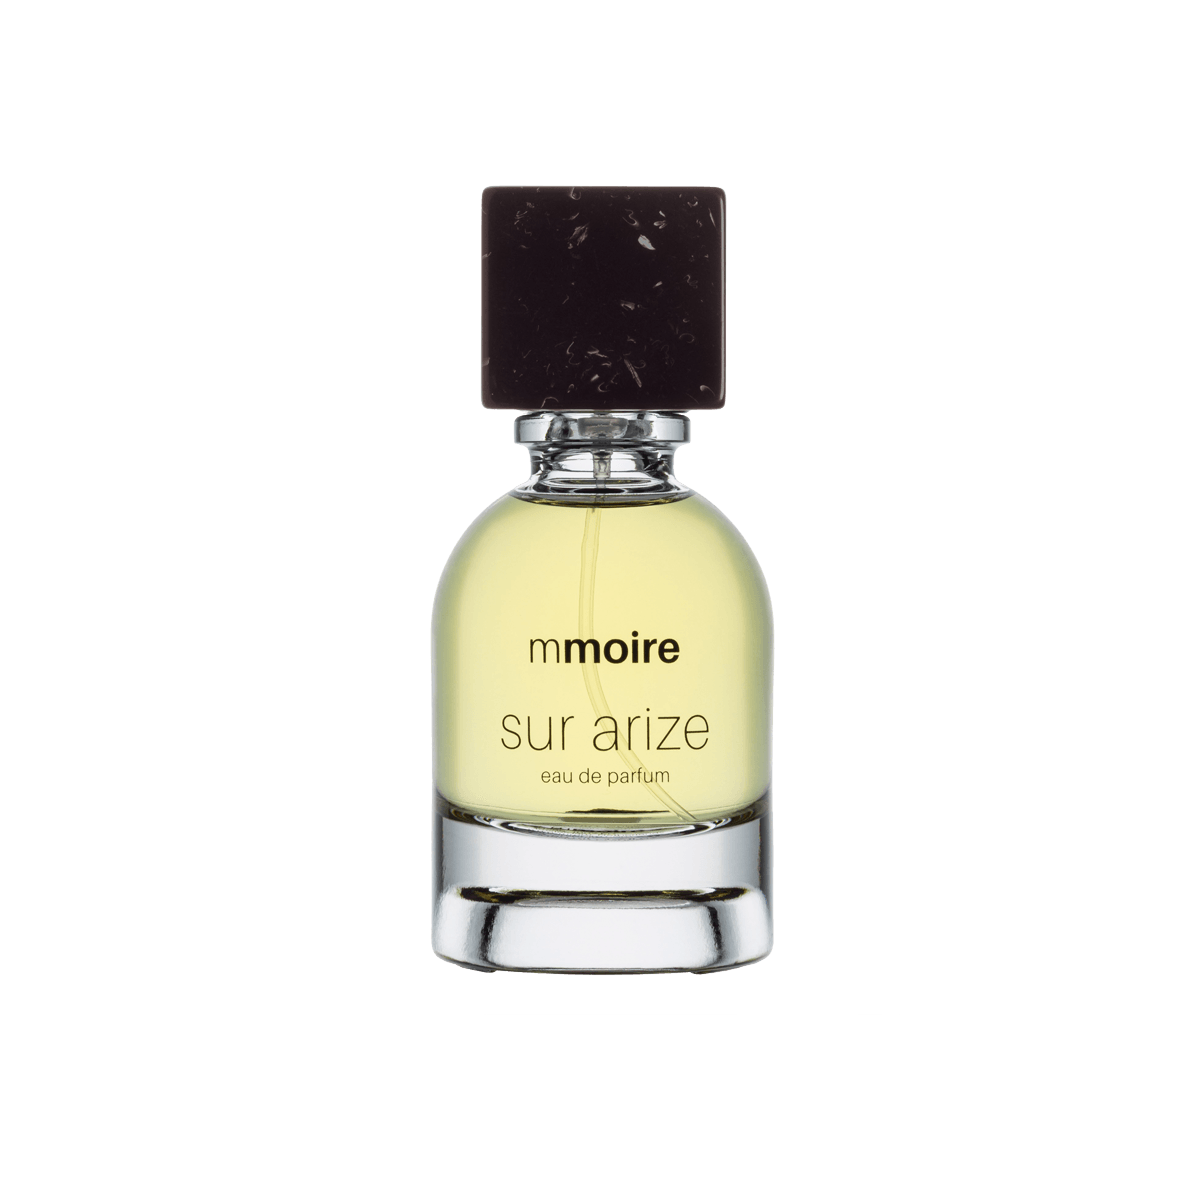 Mmoire Sur Arize - Eau de Parfum 50ml - Mr. Adam Skincare